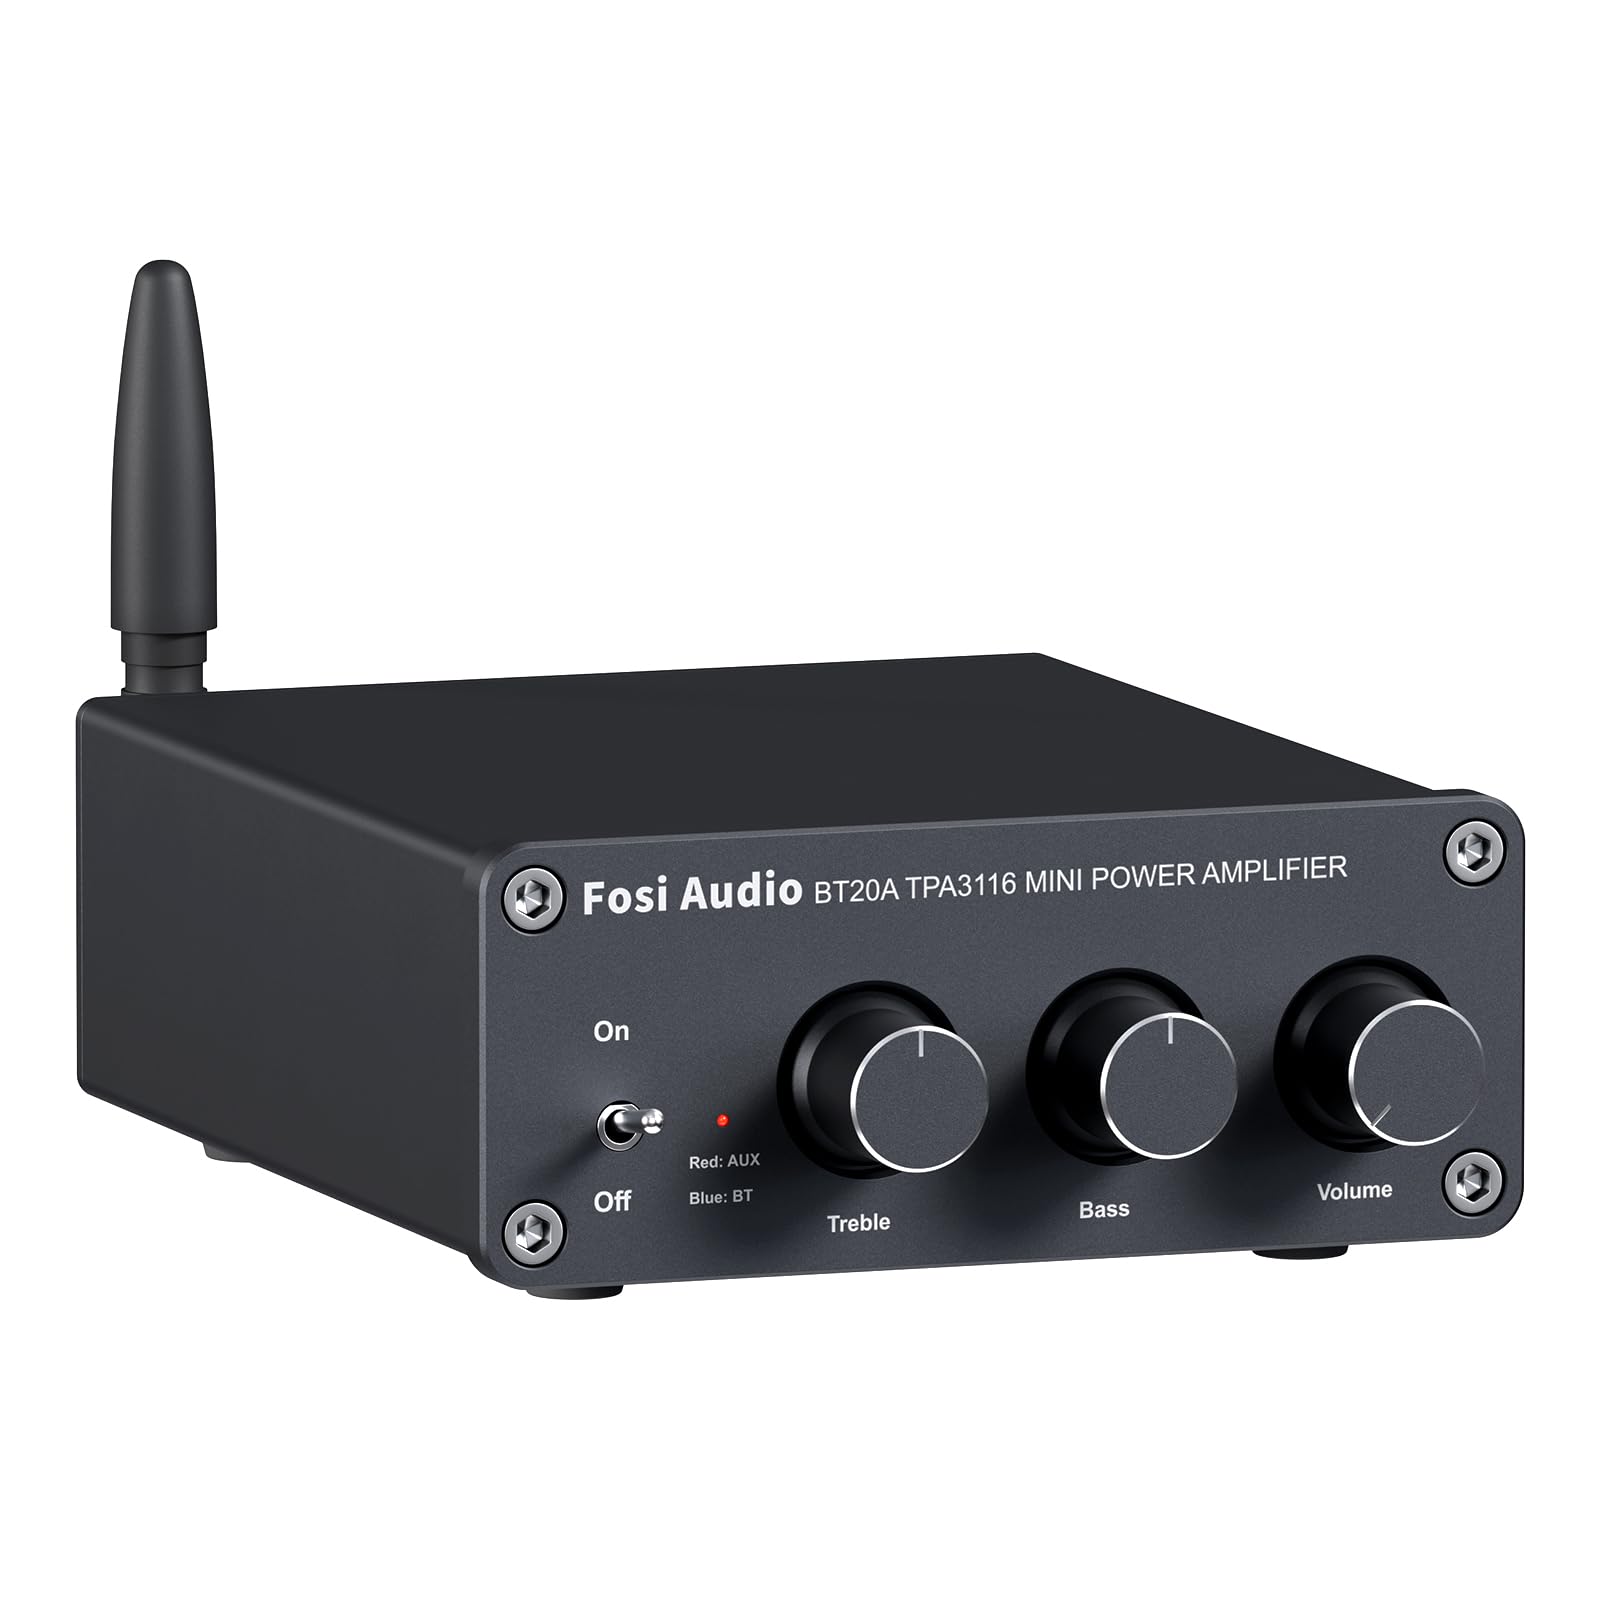  Fosi Audio BT20A Récepteur audio stéréo 2 canaux Bluetooth 5.0 Mini amplificateur Hi-Fi classe D intégré 2.0 CH pour haut-parleurs domestiques 100 W x 2 avec contrôle des basses et des aigus...